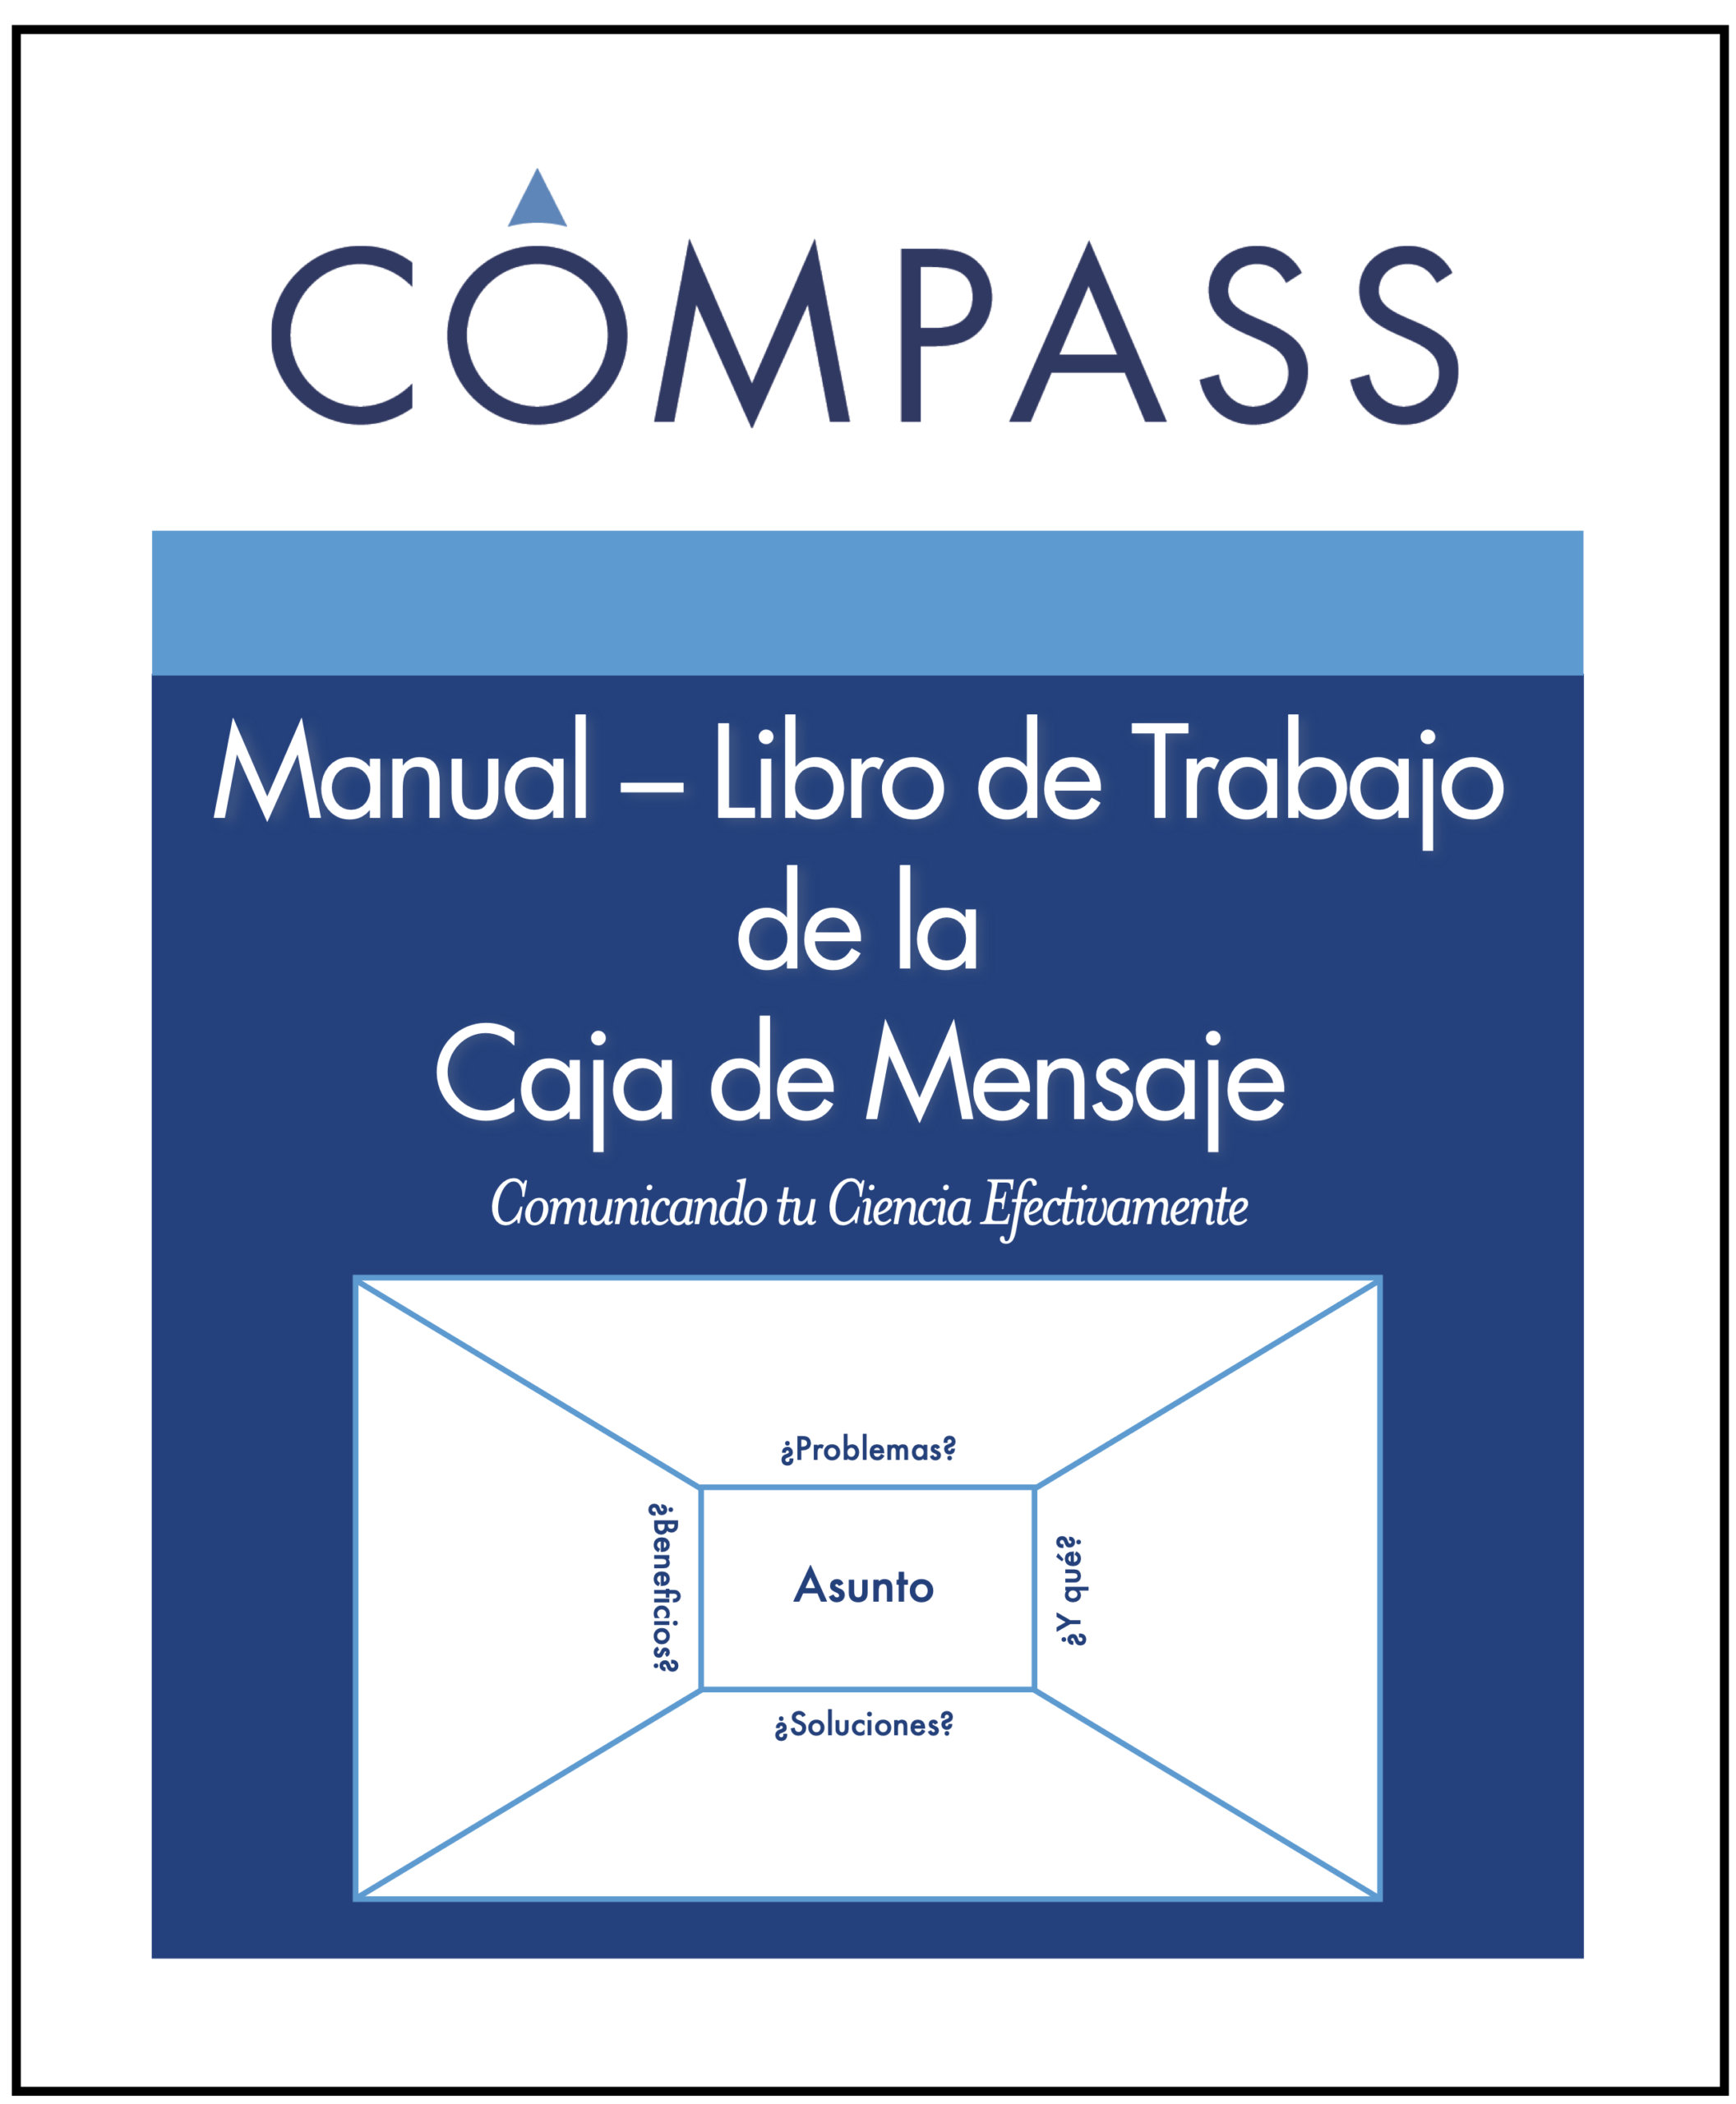 ¡La versión del COMPASS Libro de La Caja de Mensaje en Español ha llegado!